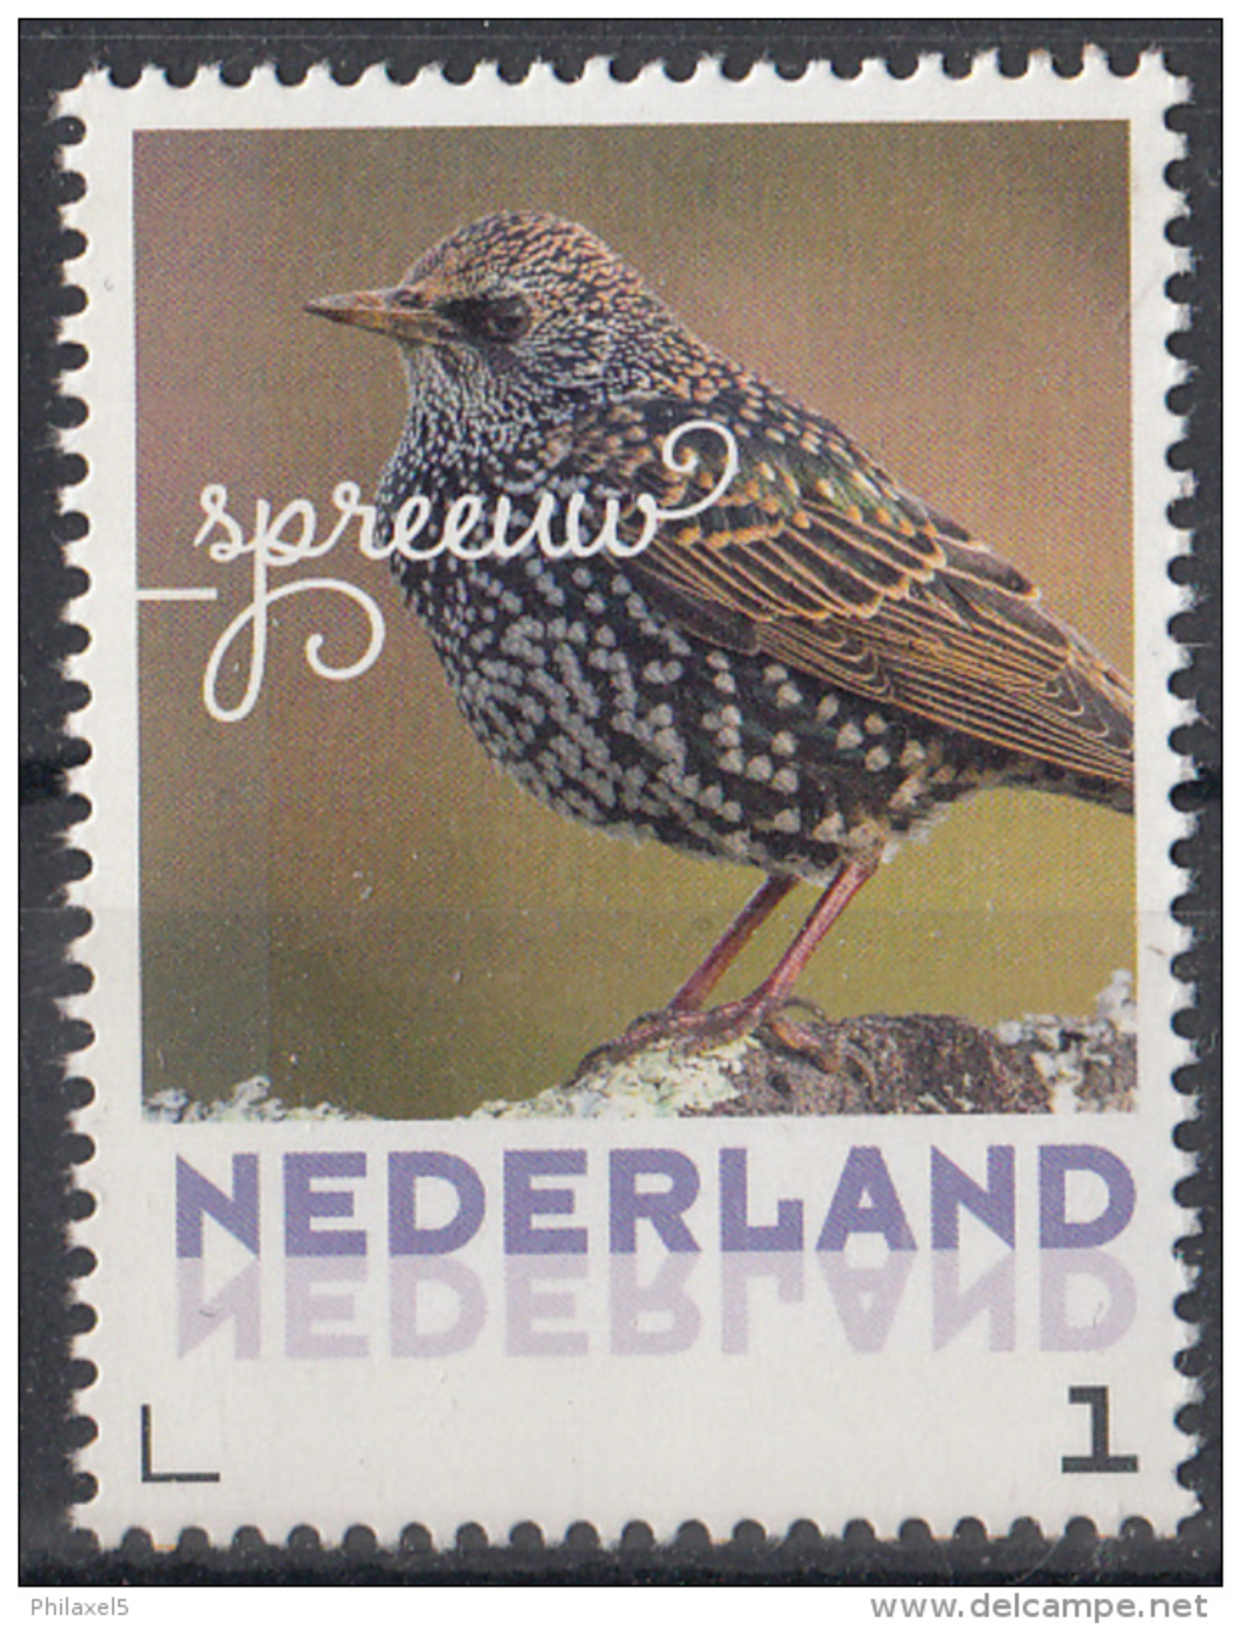 Nederland - September 2017 - Herfstvogels - Spreeuw - Vogels/birds/vögel/oiseaux - MNH - Uccelli Canterini Ed Arboricoli